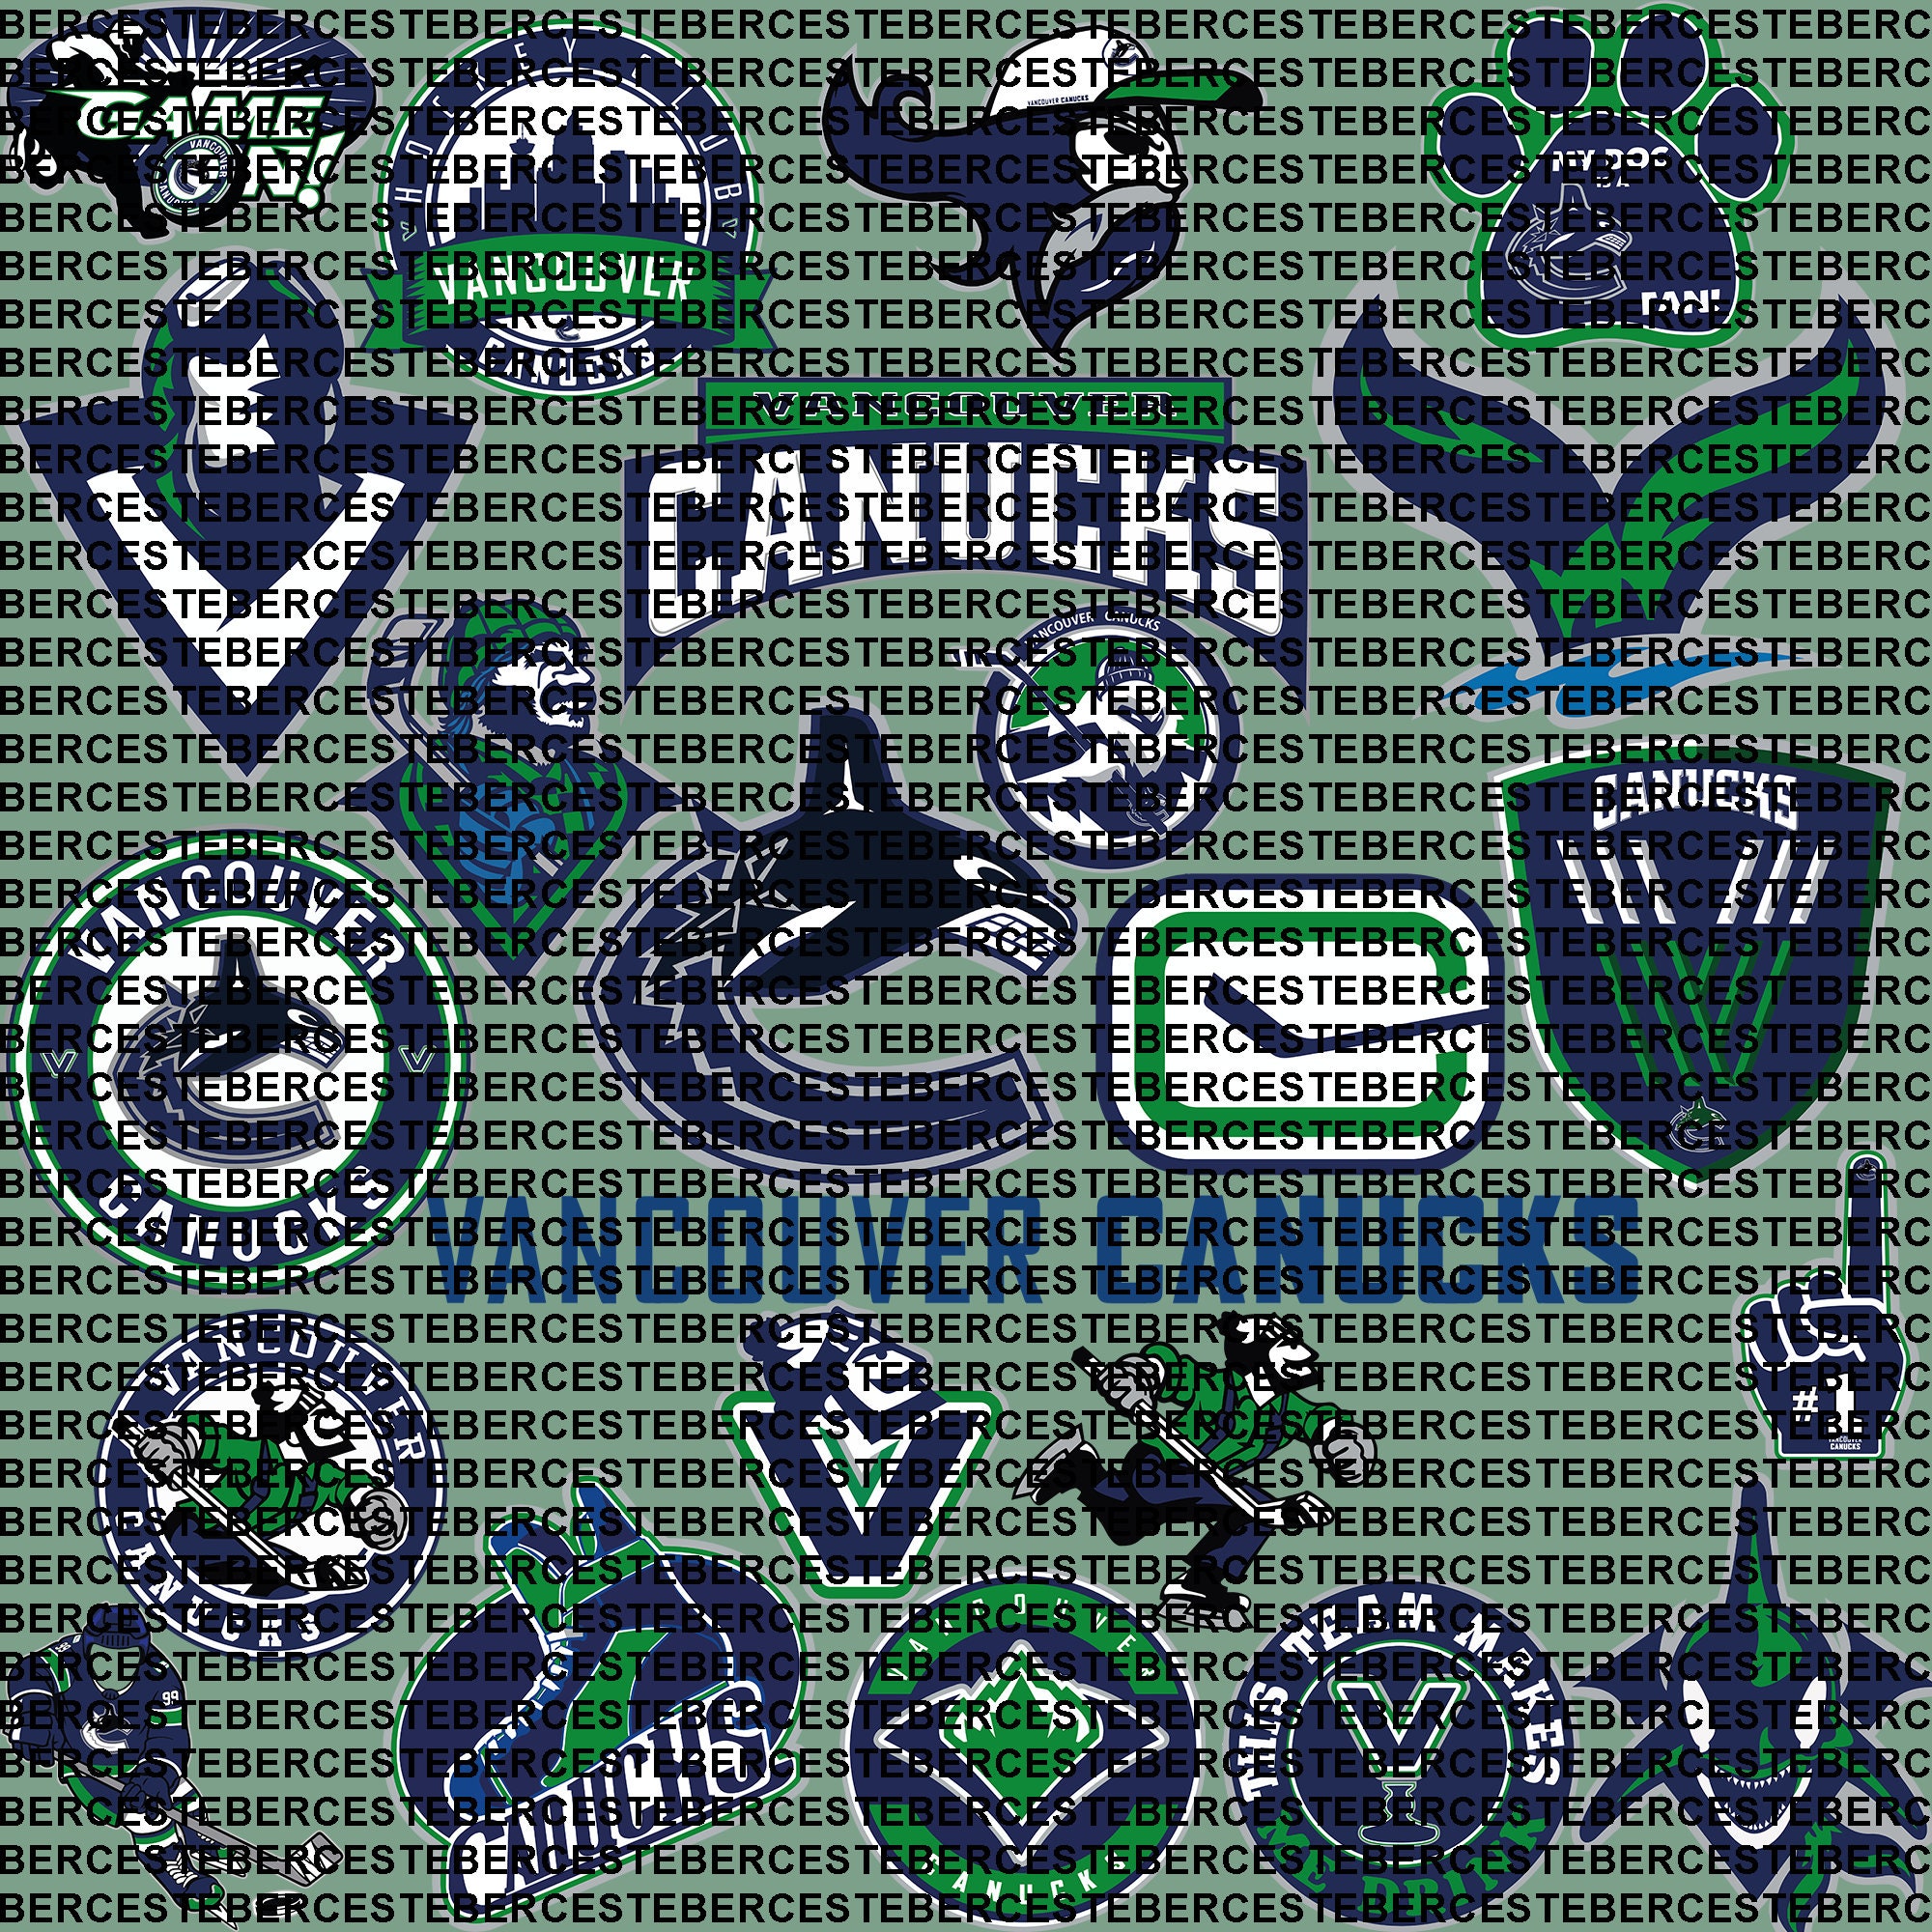 NHL Vancouver Canucks SVG, SVG Files For Silhouette, Vancouver Canucks  Files For Cricut, Vancouver Canucks SVG, DXF, EPS, PNG Instant Download. Vancouver  Canucks SVG, SVG Files For Silhouette, Vancouver Canucks Files For